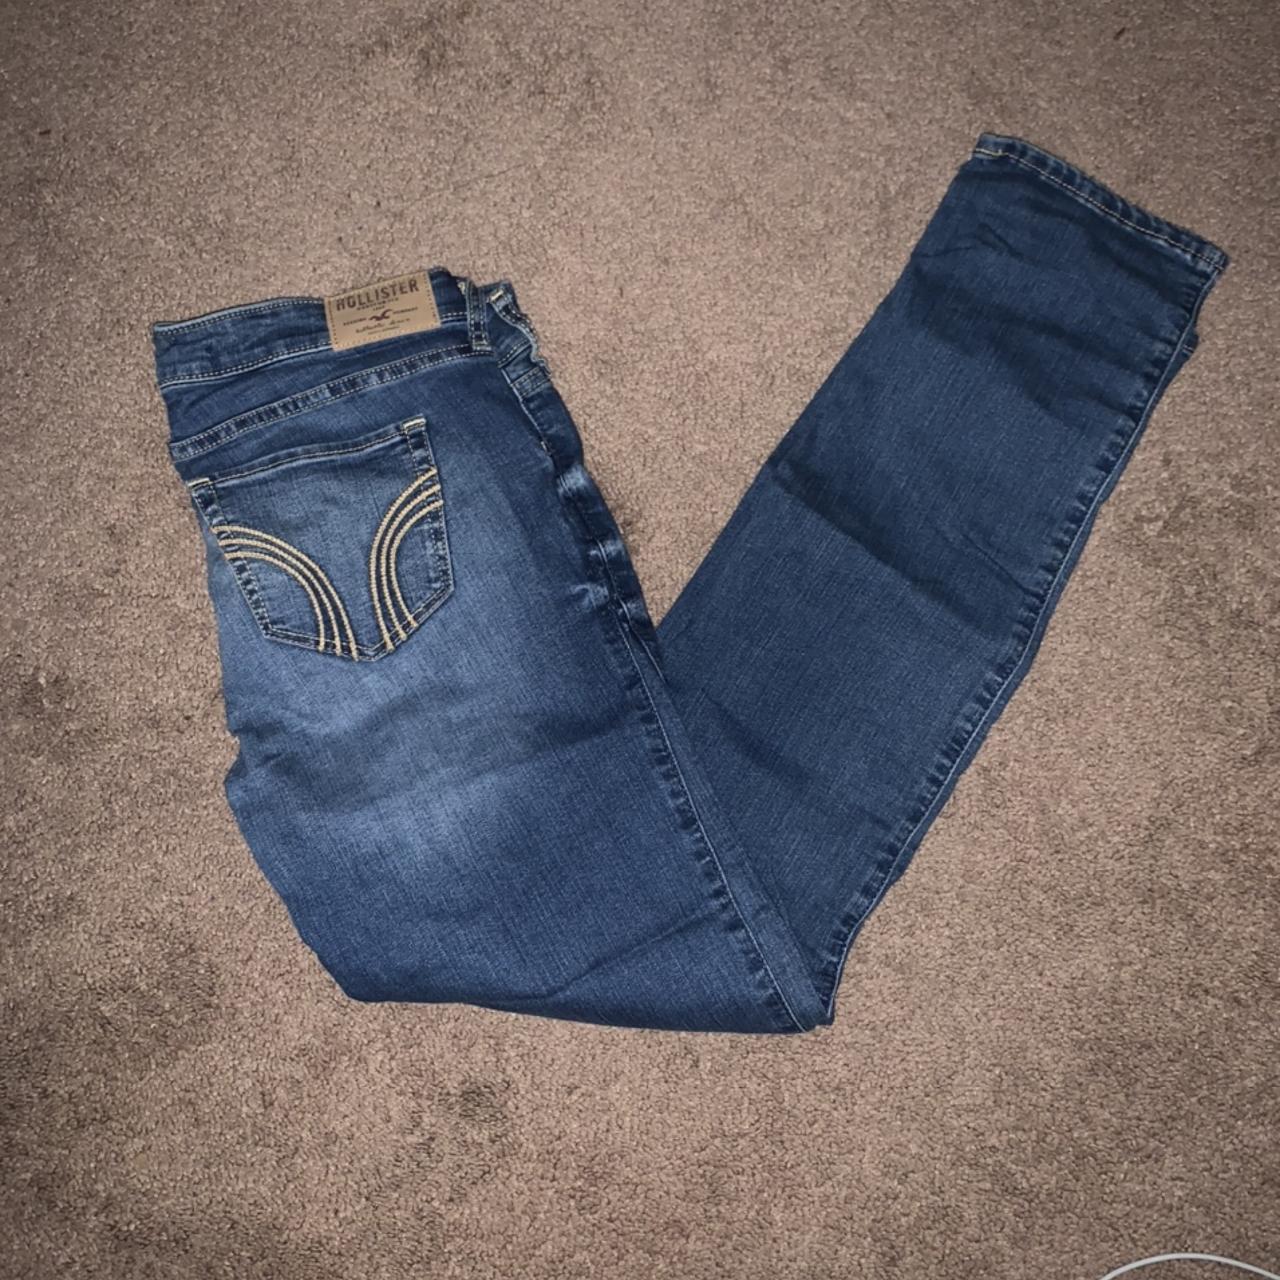 Hollister Super Skinny Jeans 👖 Pre-loved but in - Depop